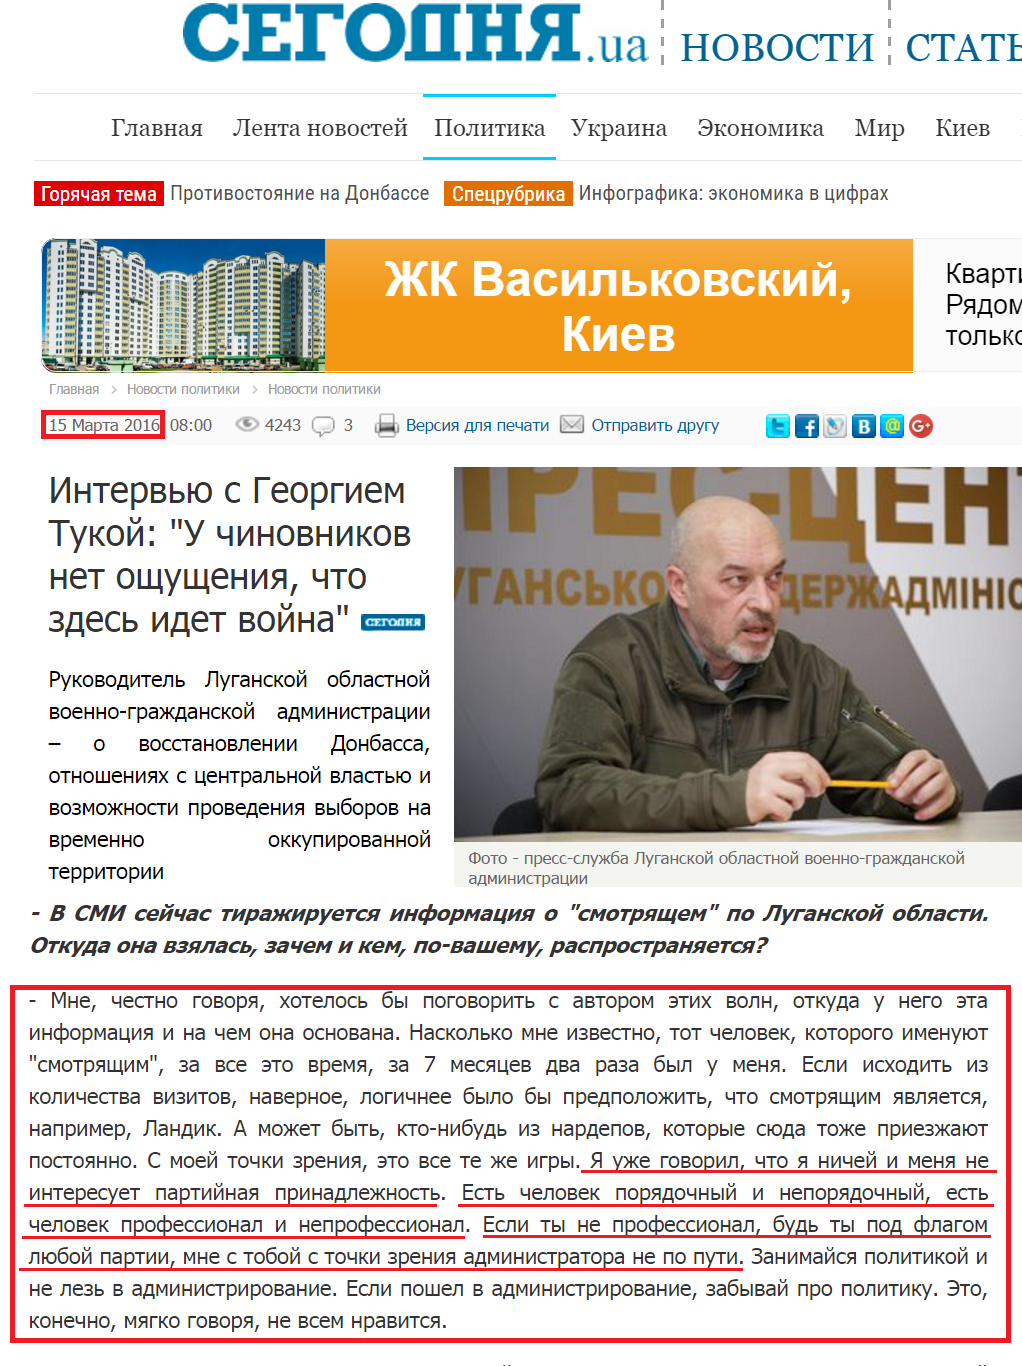 http://www.segodnya.ua/politics/pnews/intervyu-s-georgiem-tukoy--699057.html